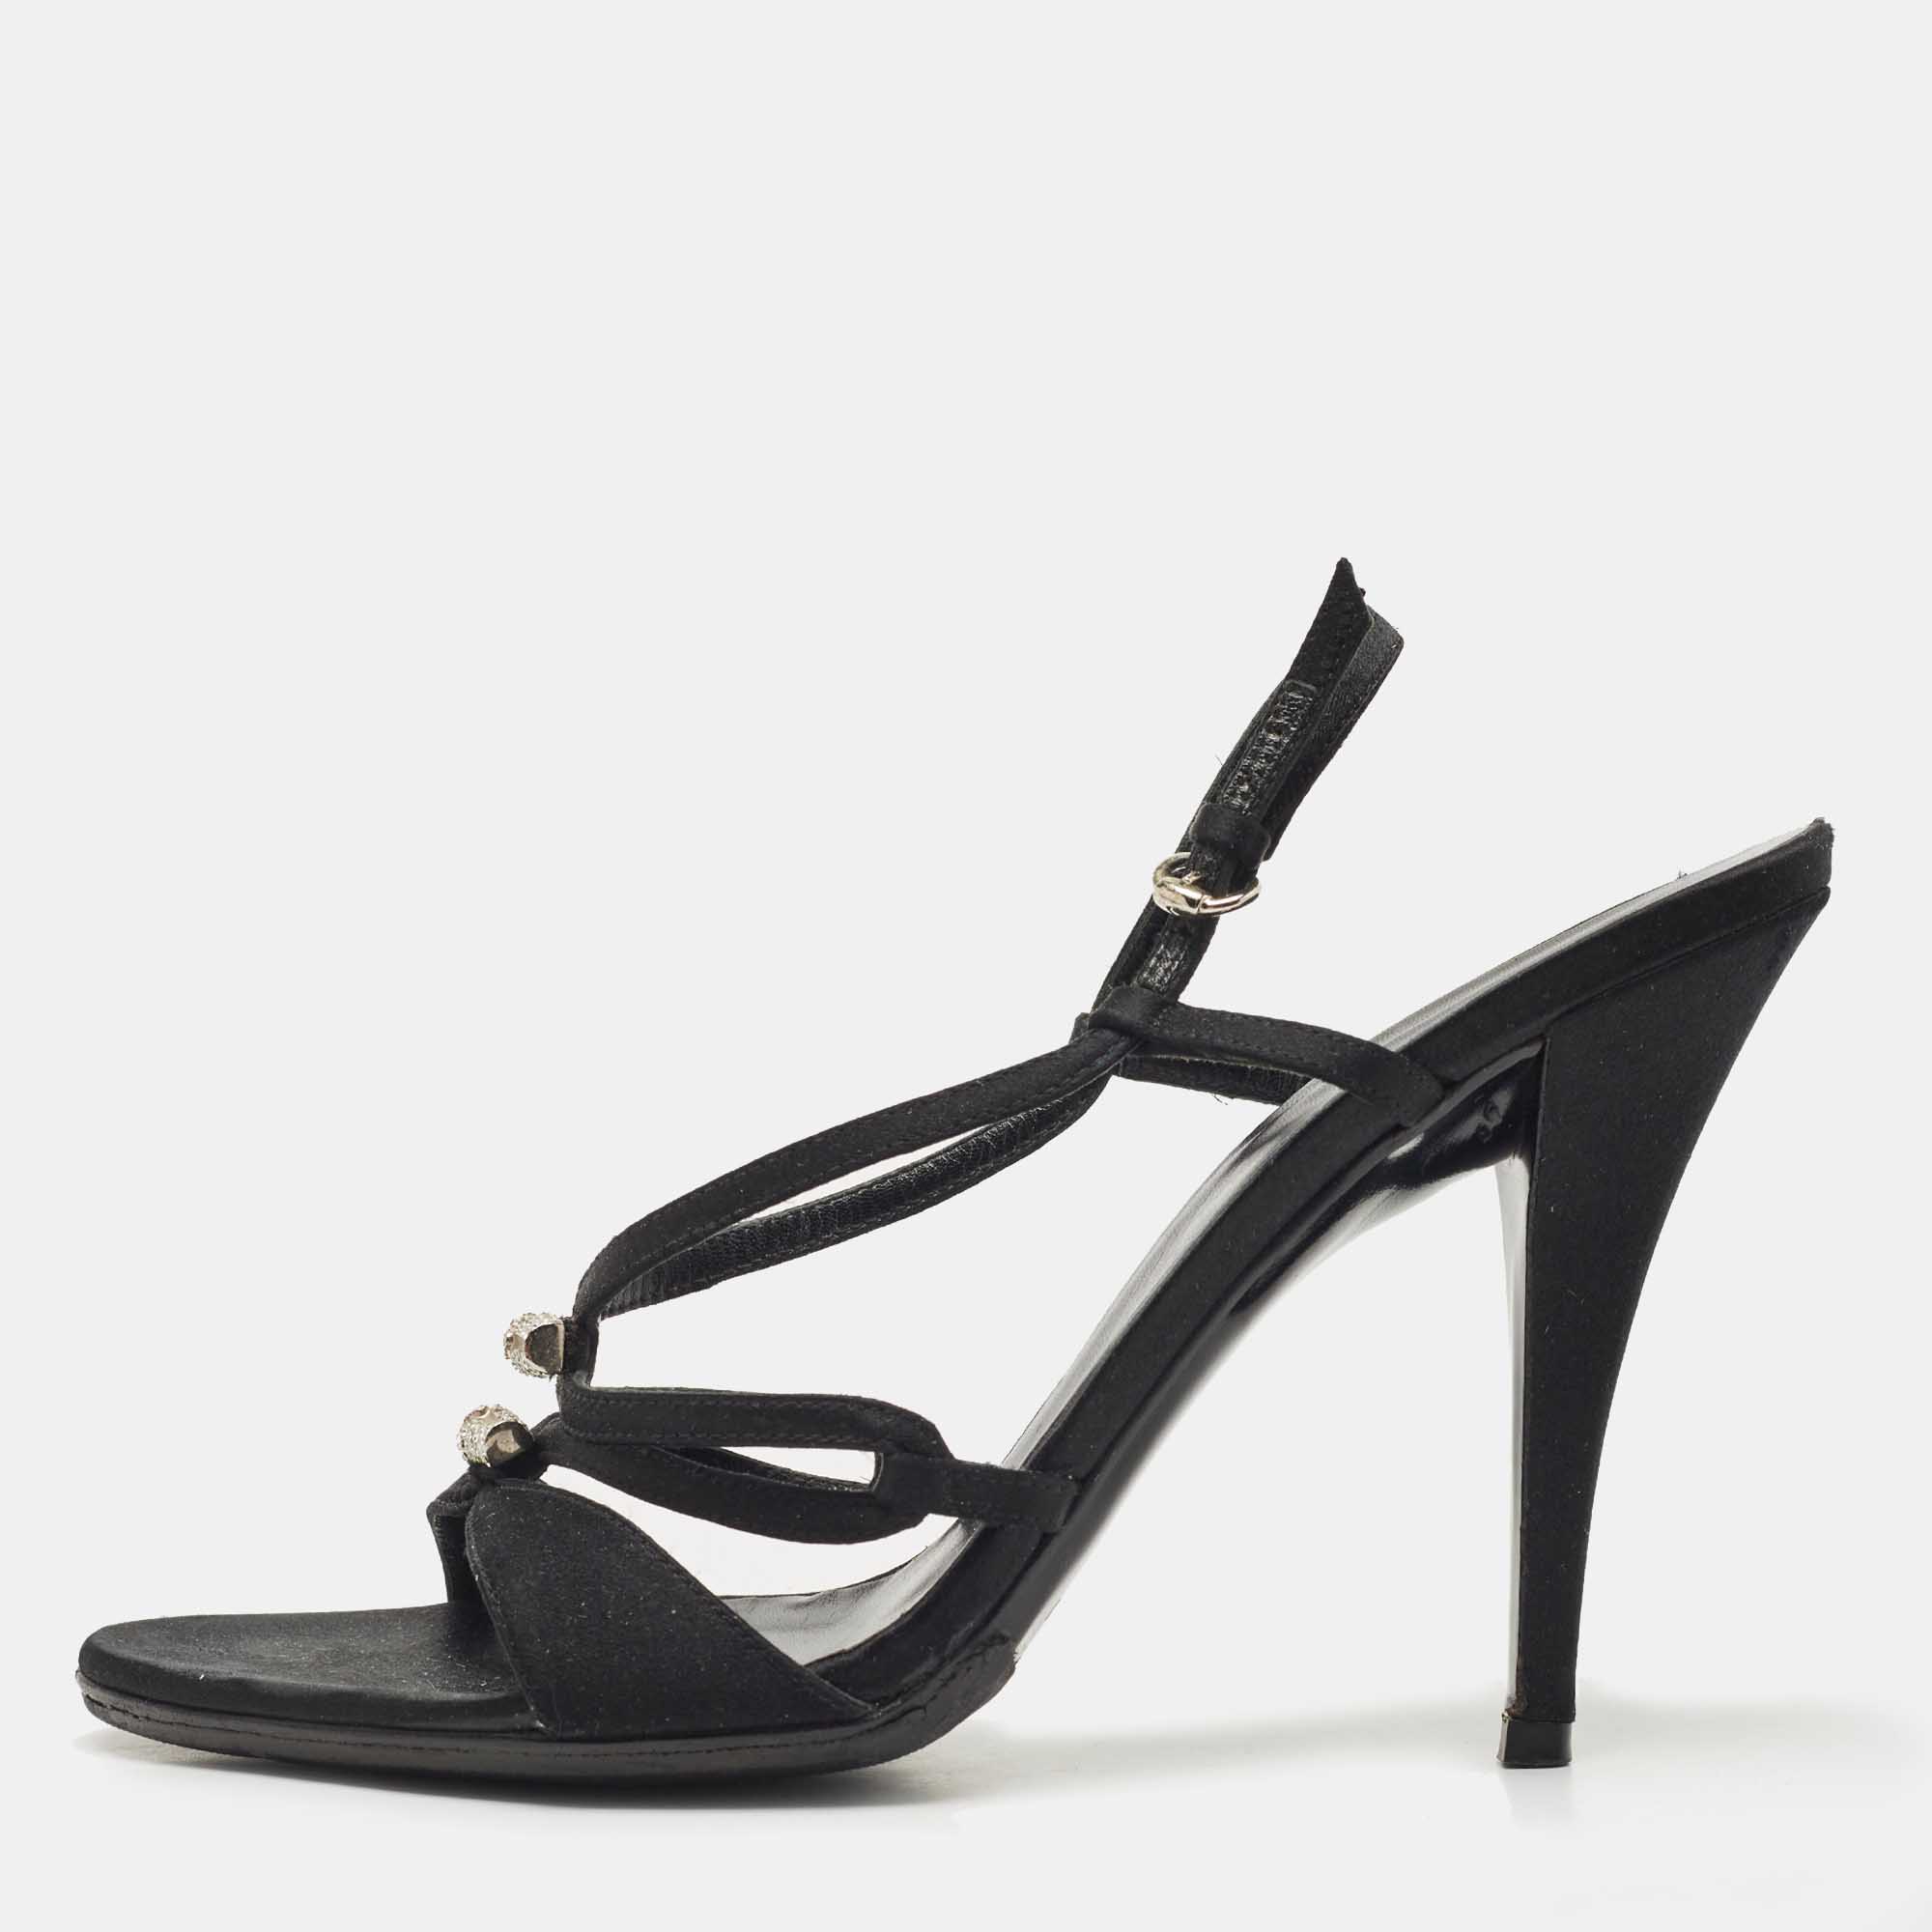 Gucci black satin strappy sandals size 39.5